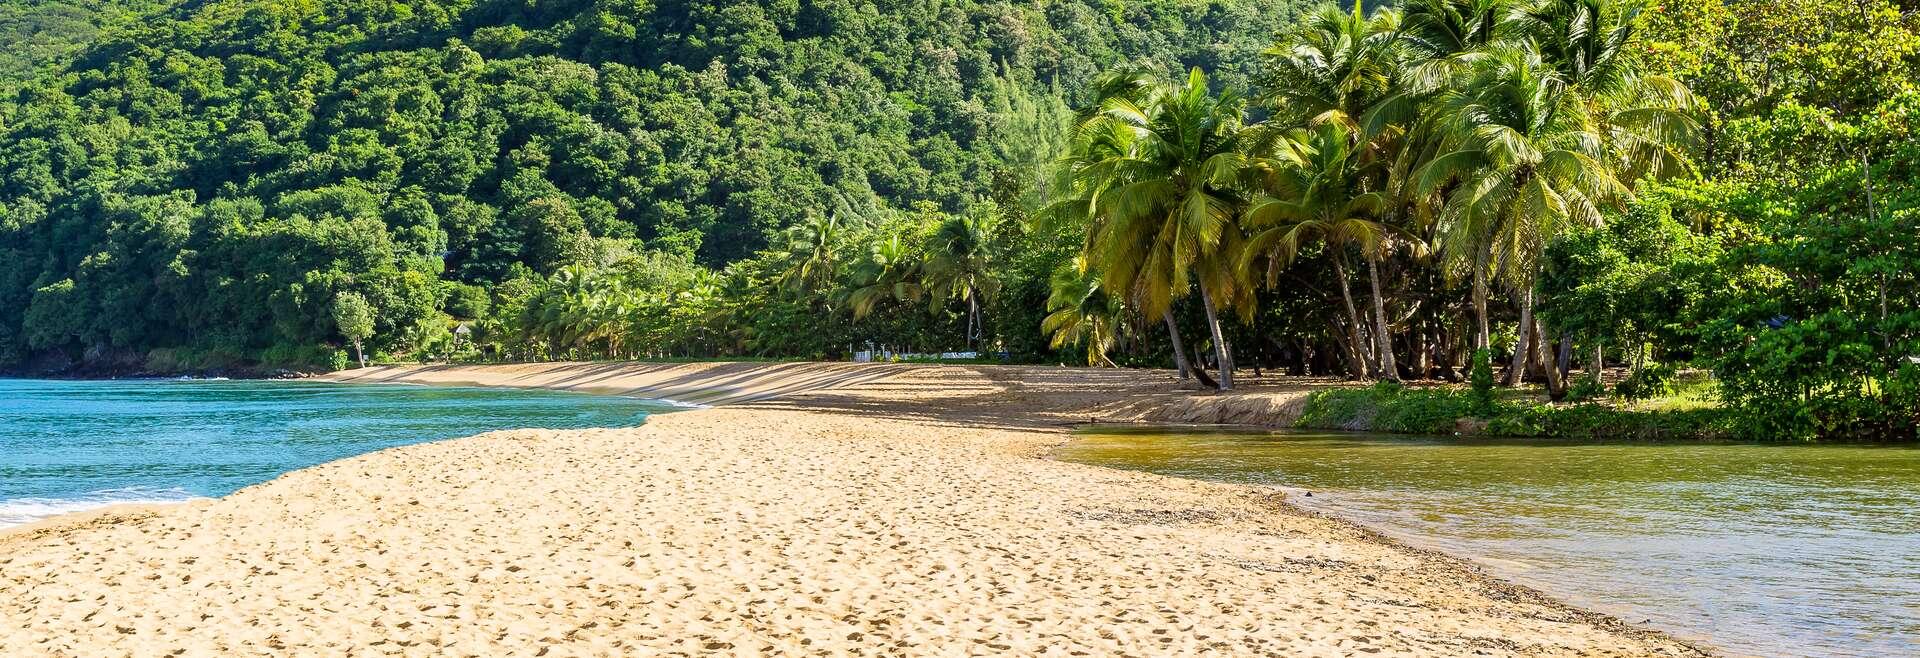 Séjour linguistique Guadeloupe, Le Gosier - plage